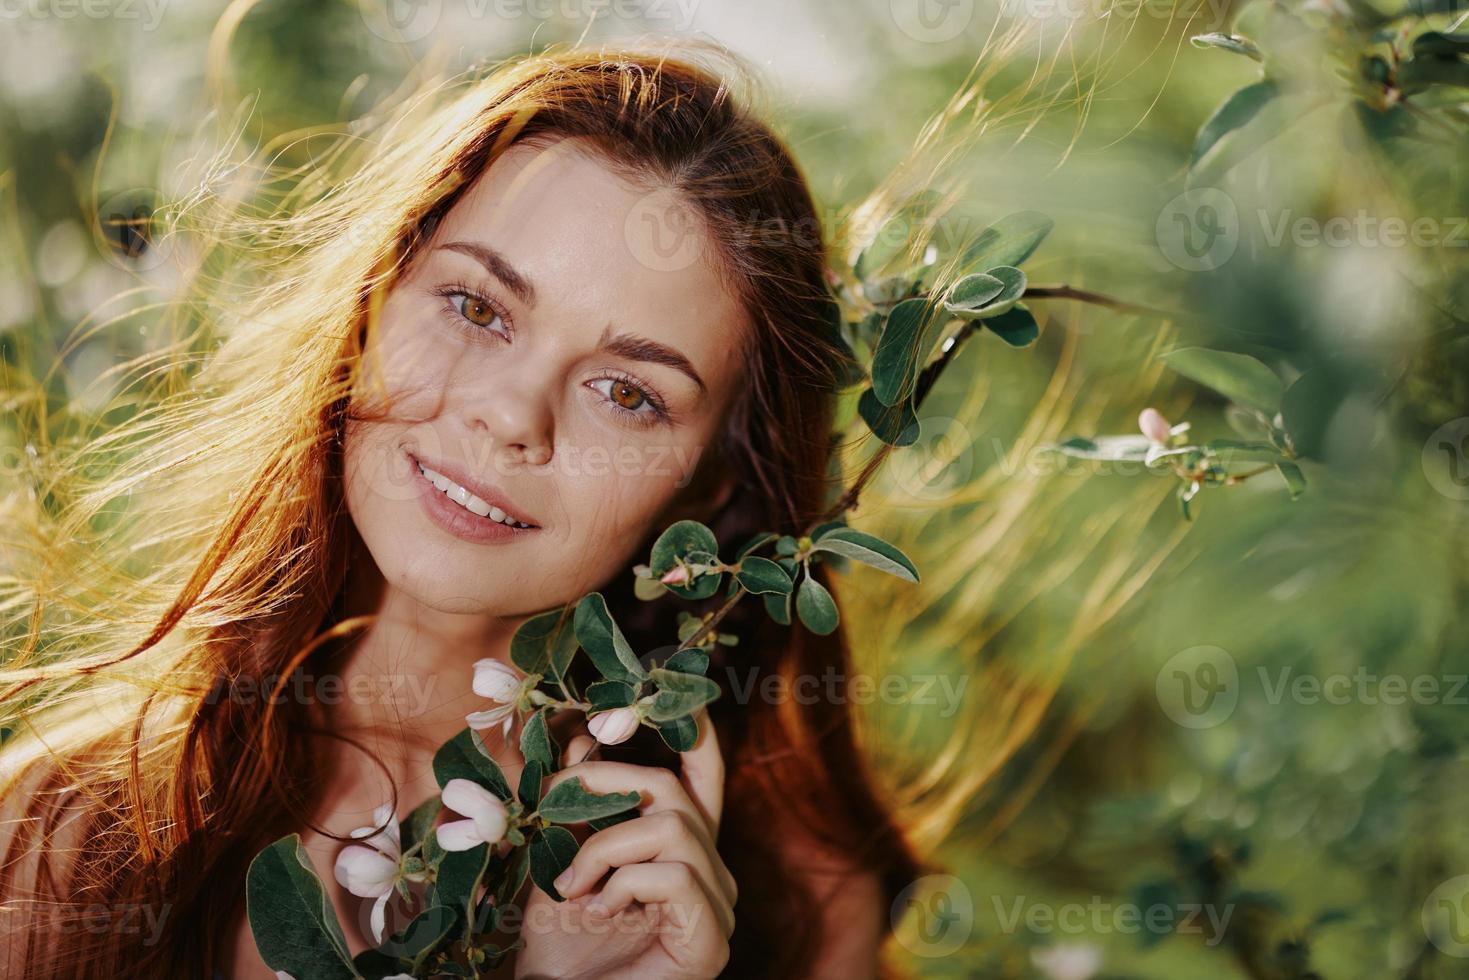 hermosa mujer sonrisa mira a el cámara de cerca con largo rojo pelo cerca un árbol en el verano Dom en naturaleza en el parque sonriente sin alergias en un azul vestido, el concepto de salud y belleza foto